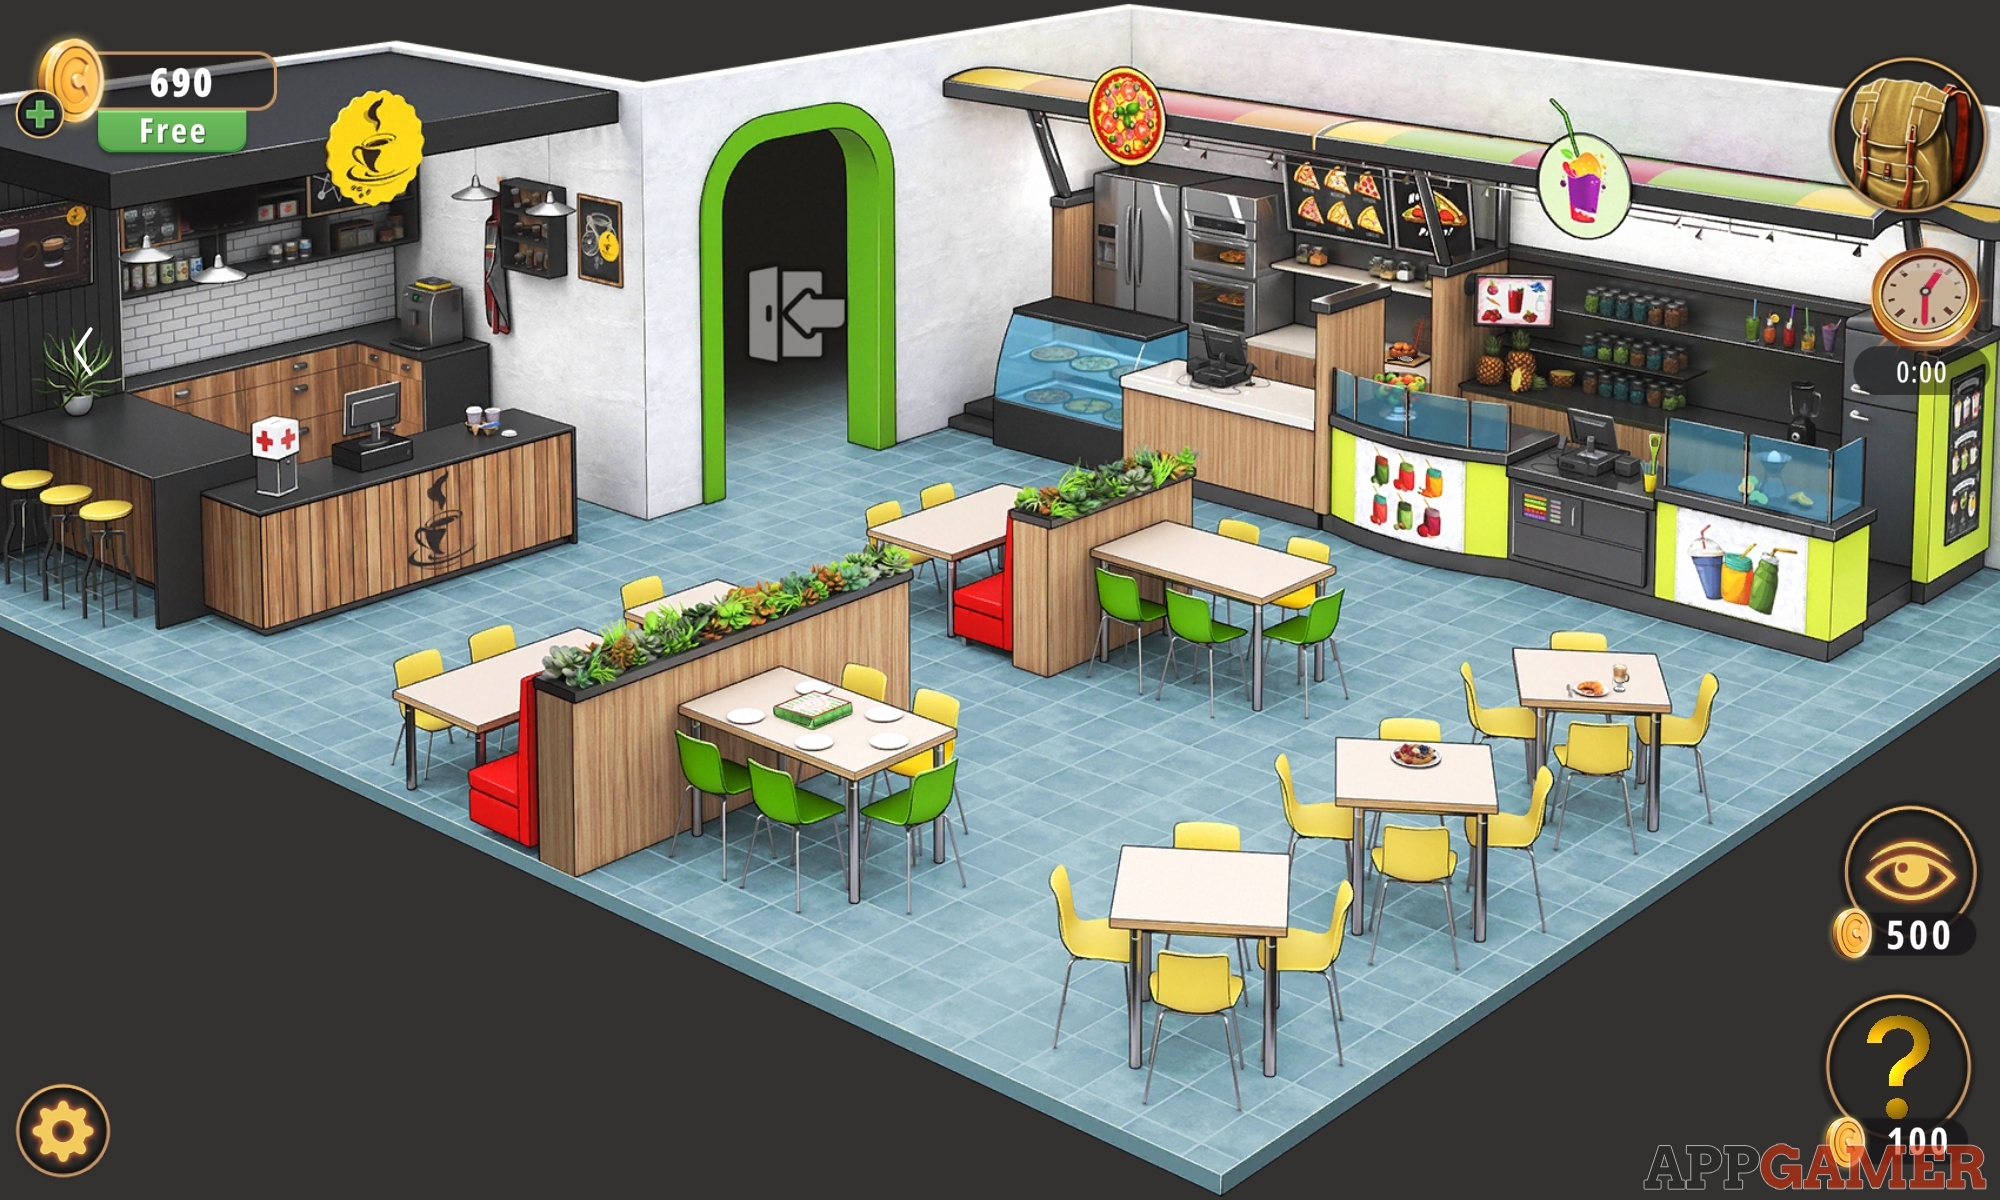 Food Court Walkthrough Rooms Exits: Escape Room Games